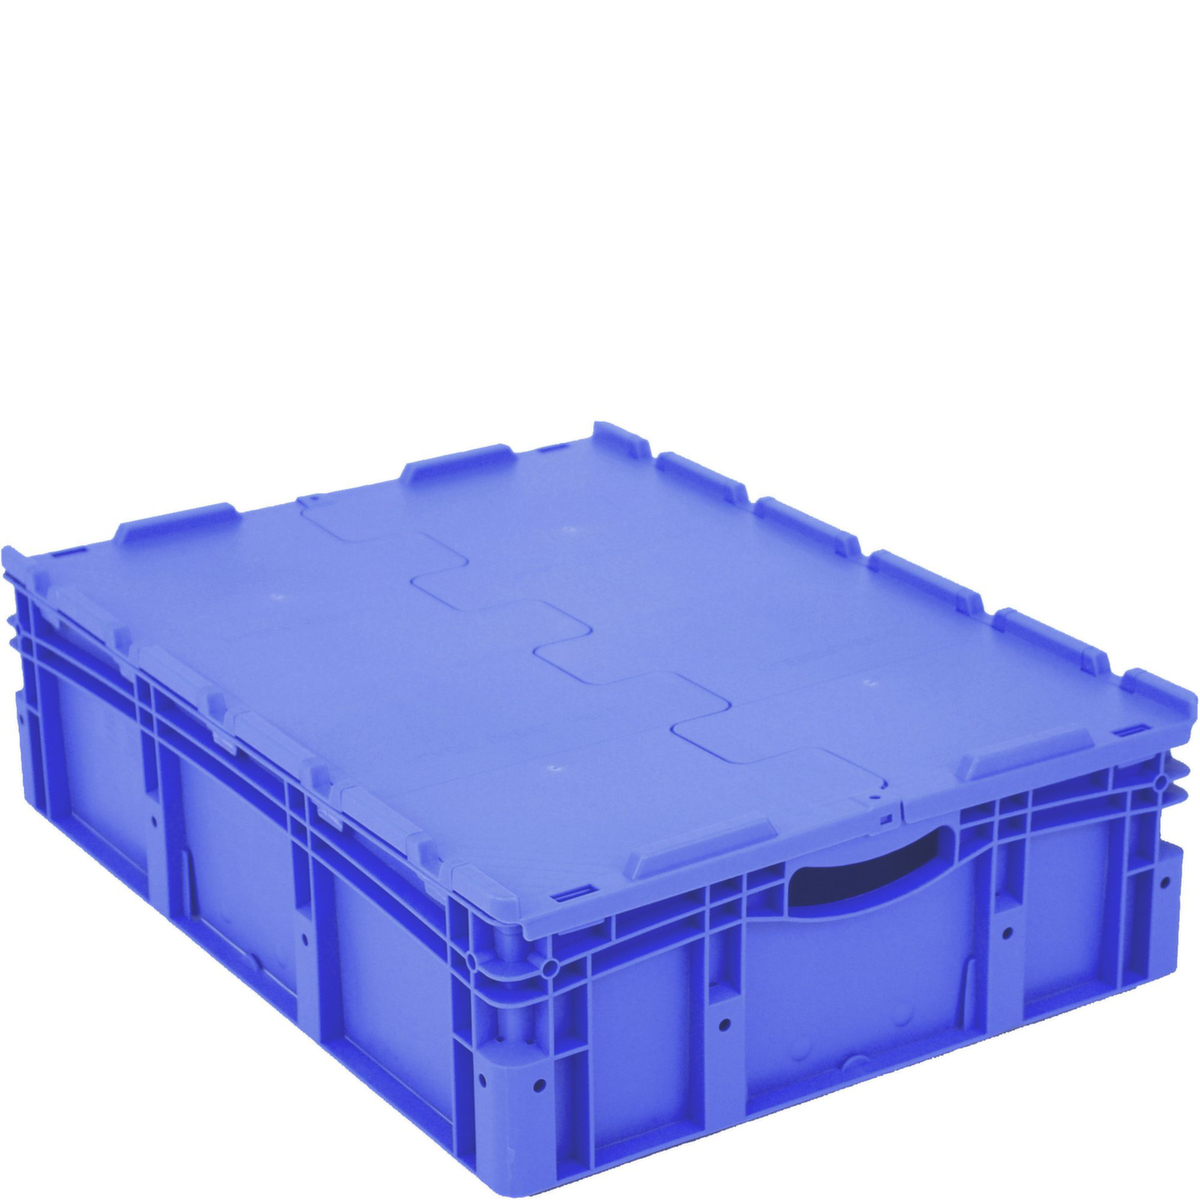 Euronorm-Stapelbehälter mit Doppelboden, blau, Inhalt 79 l, Zweiteiliger Scharnierdeckel Standard 2 ZOOM